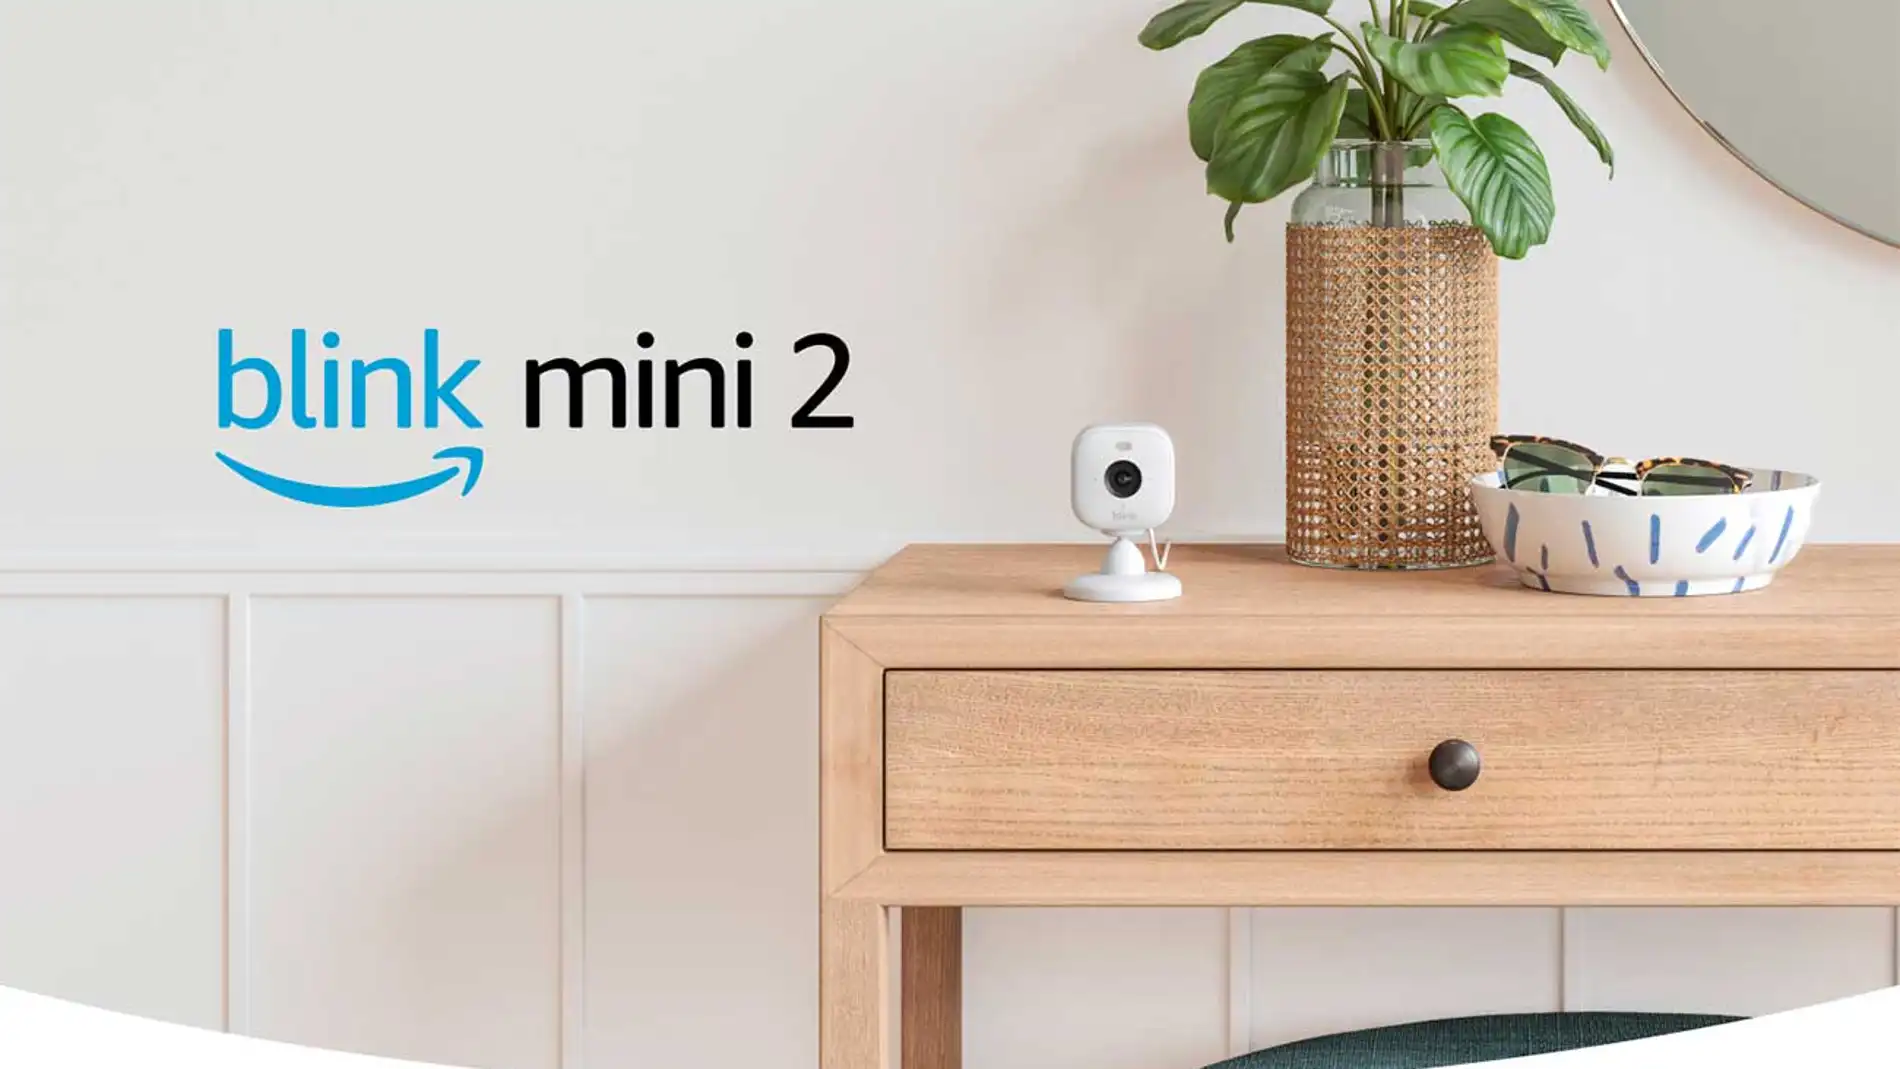 La nueva Blink Mini 2 en interiores